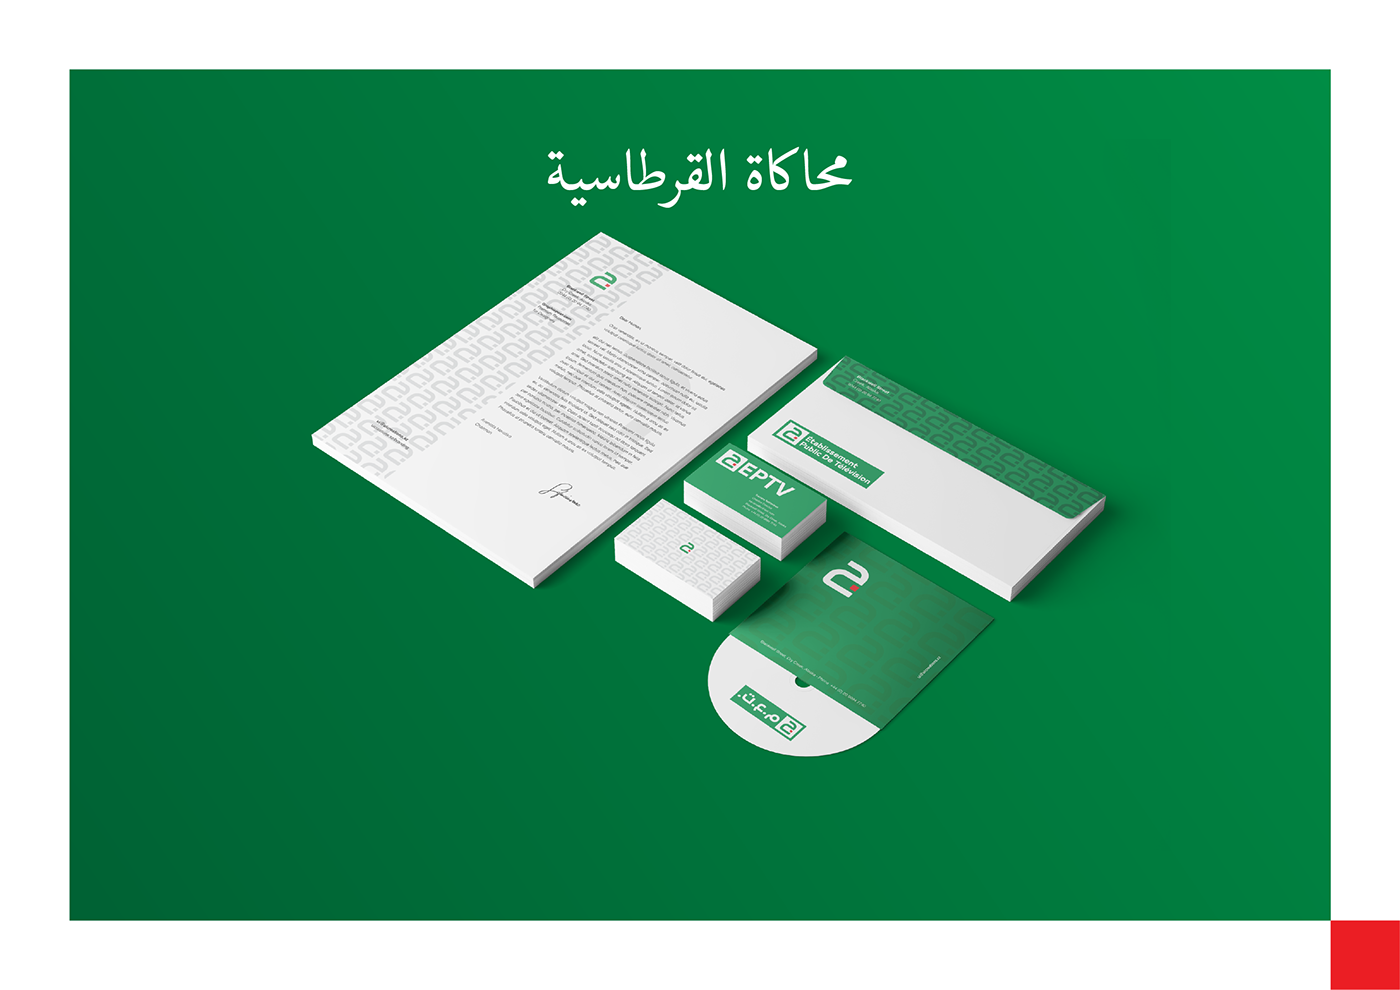 Algeria algerie brand djazair eptv TV channel الجزائر 